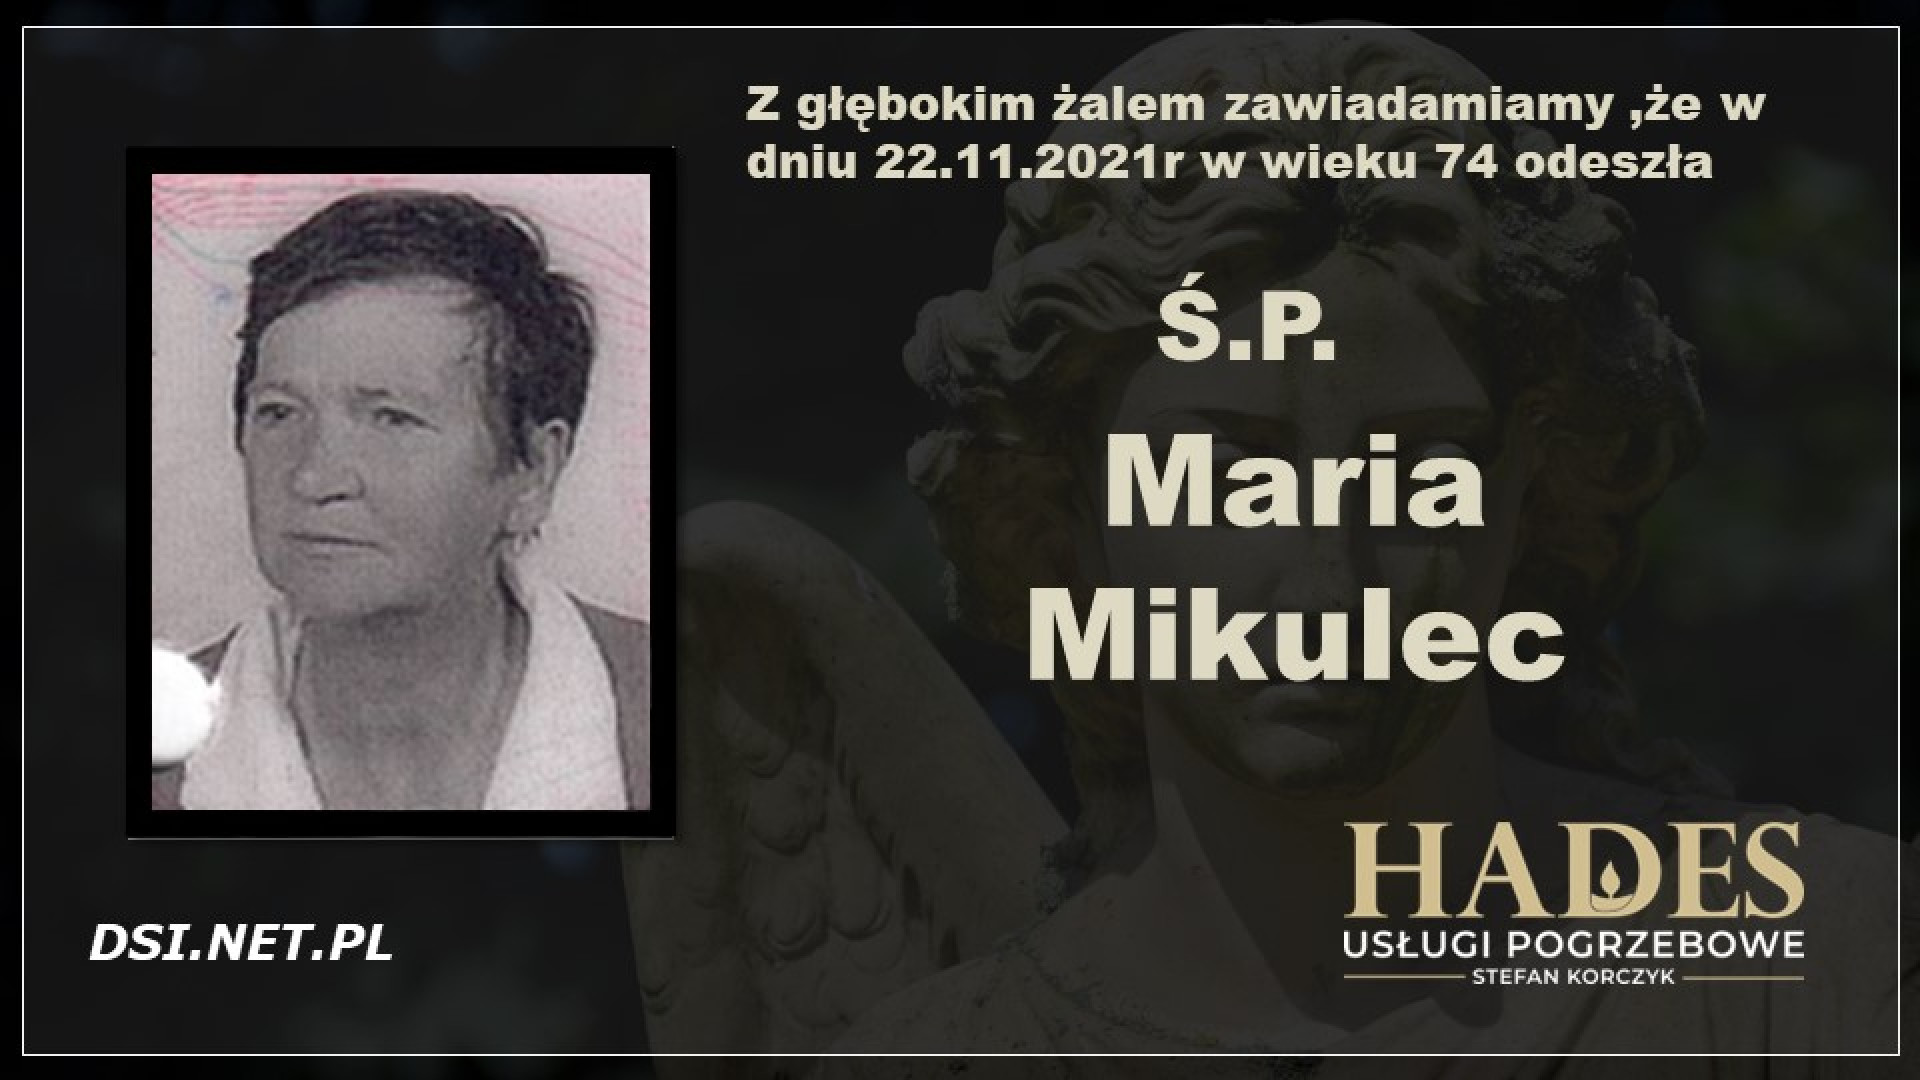 Ś.P. Maria Mikulec